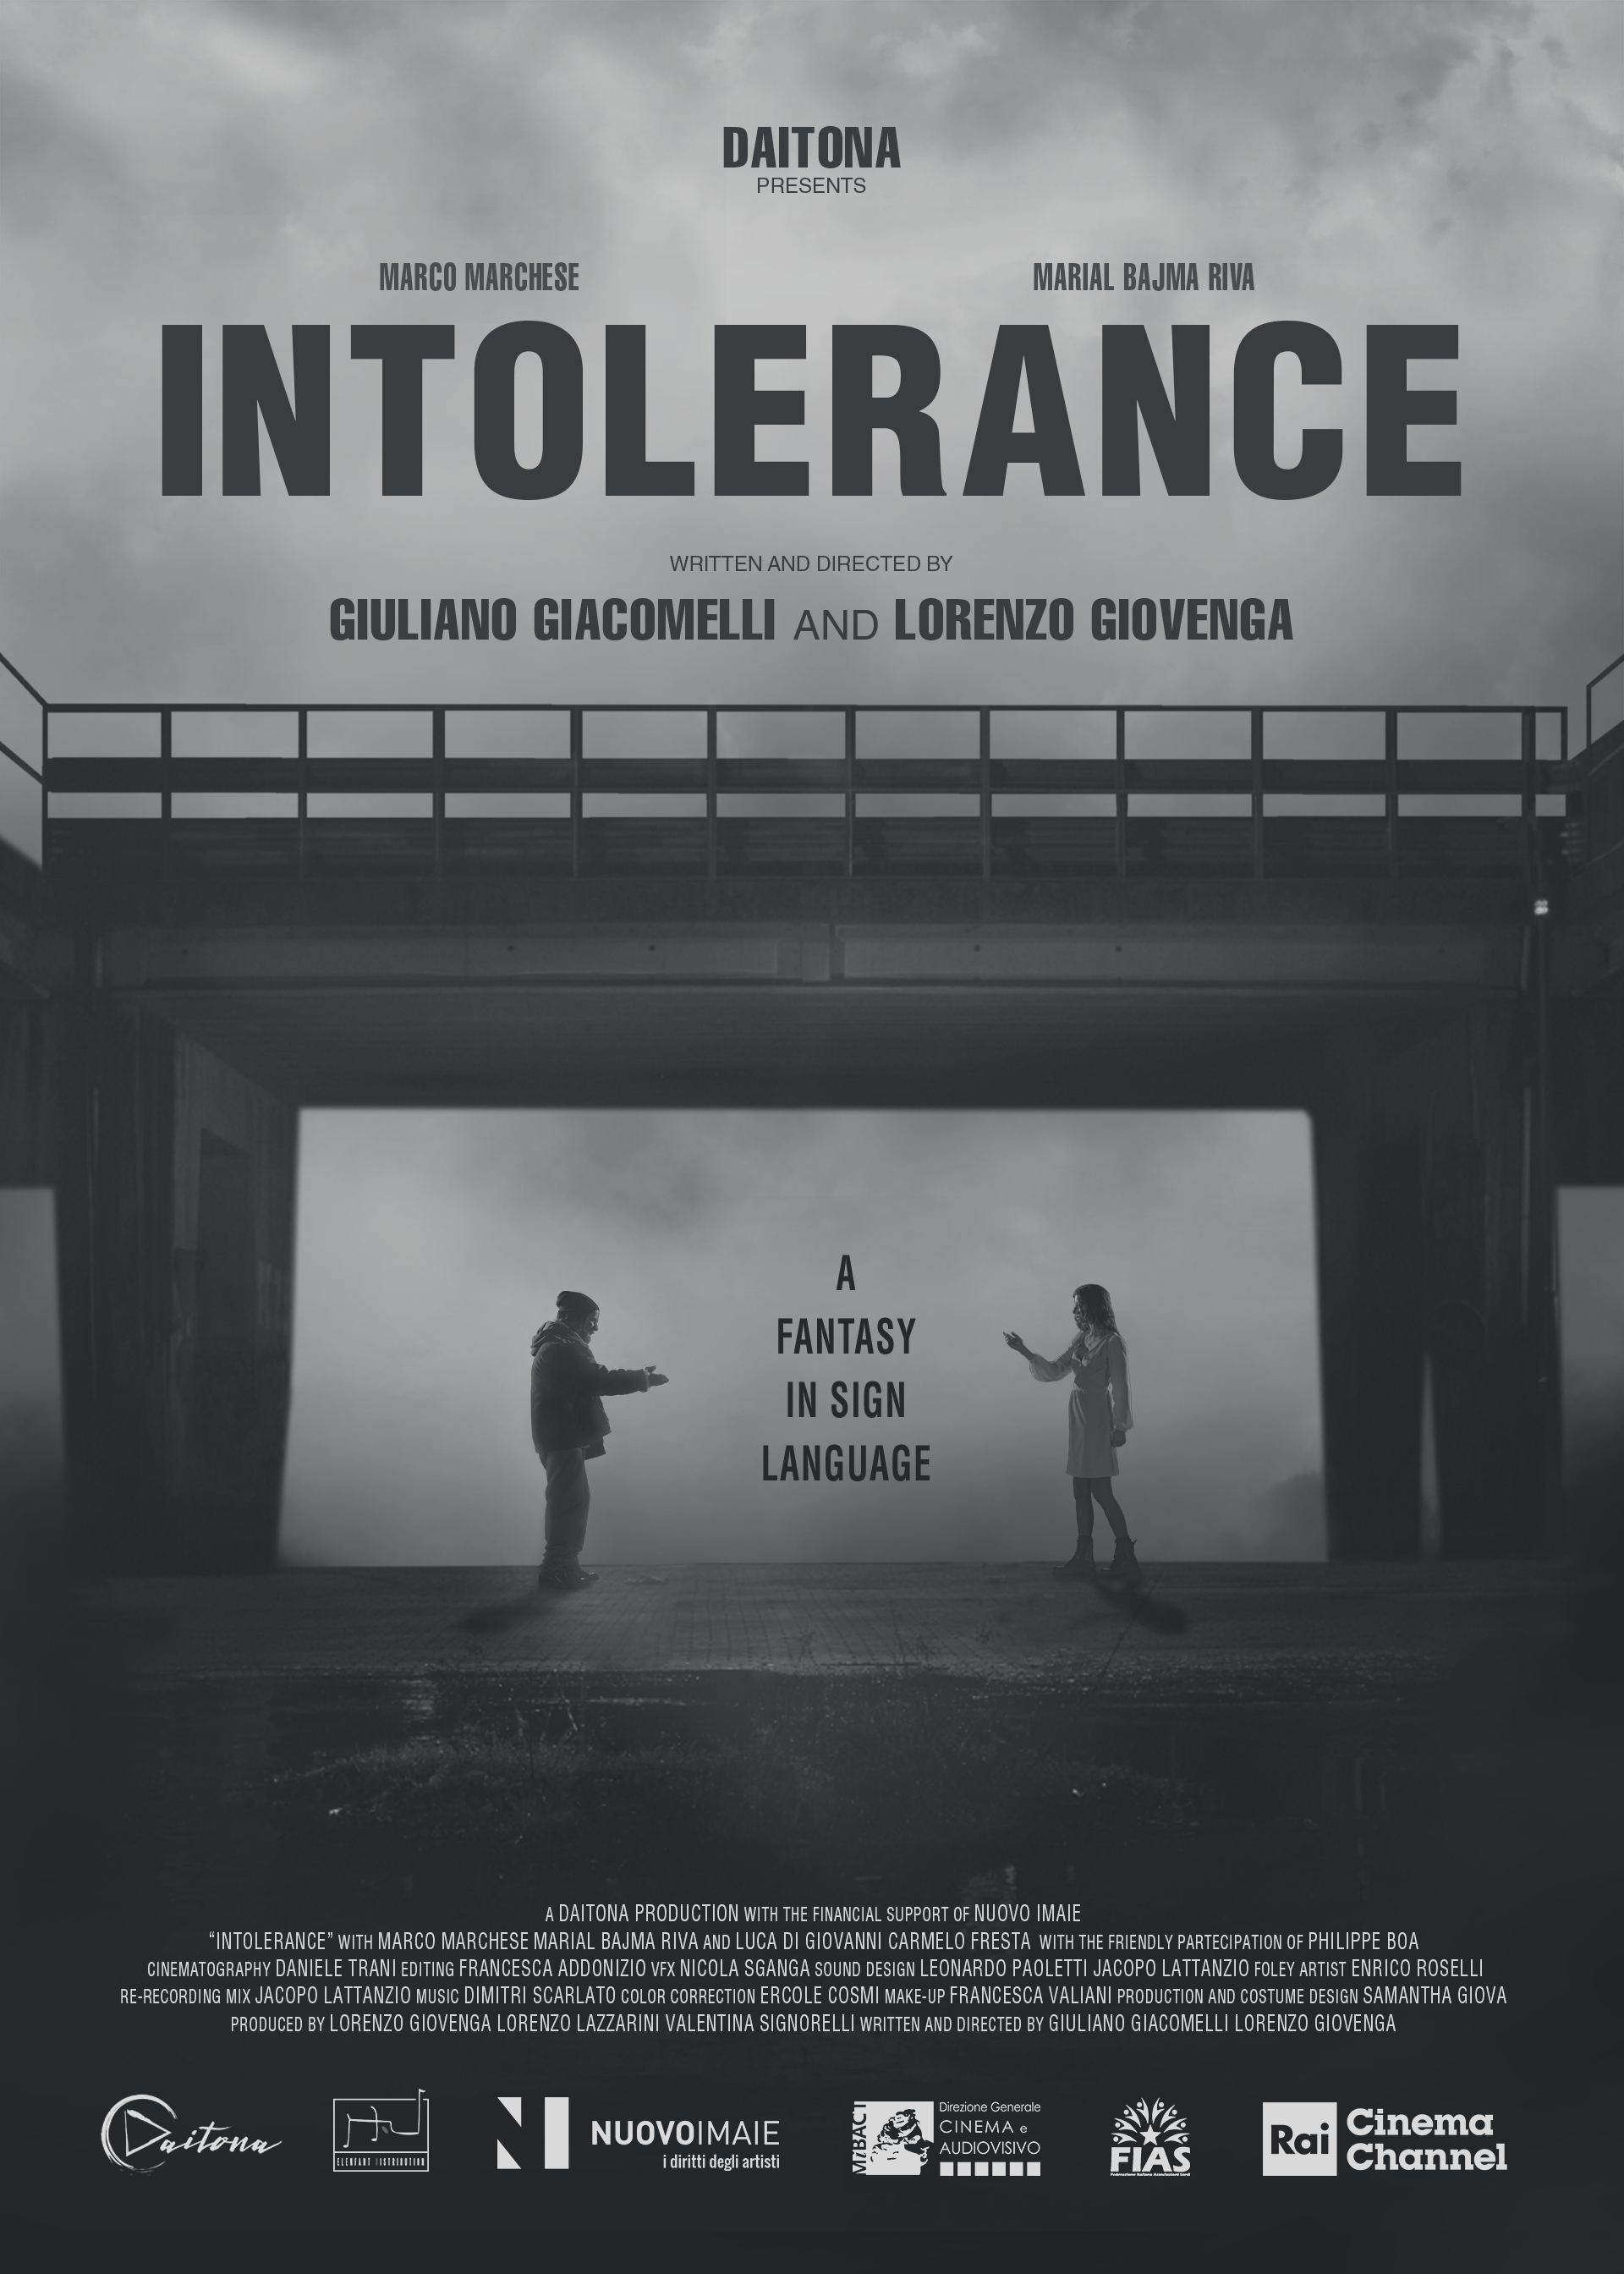 [NEWS] Il trailer di Intolerance, corto noir-fantasy girato nella LIS